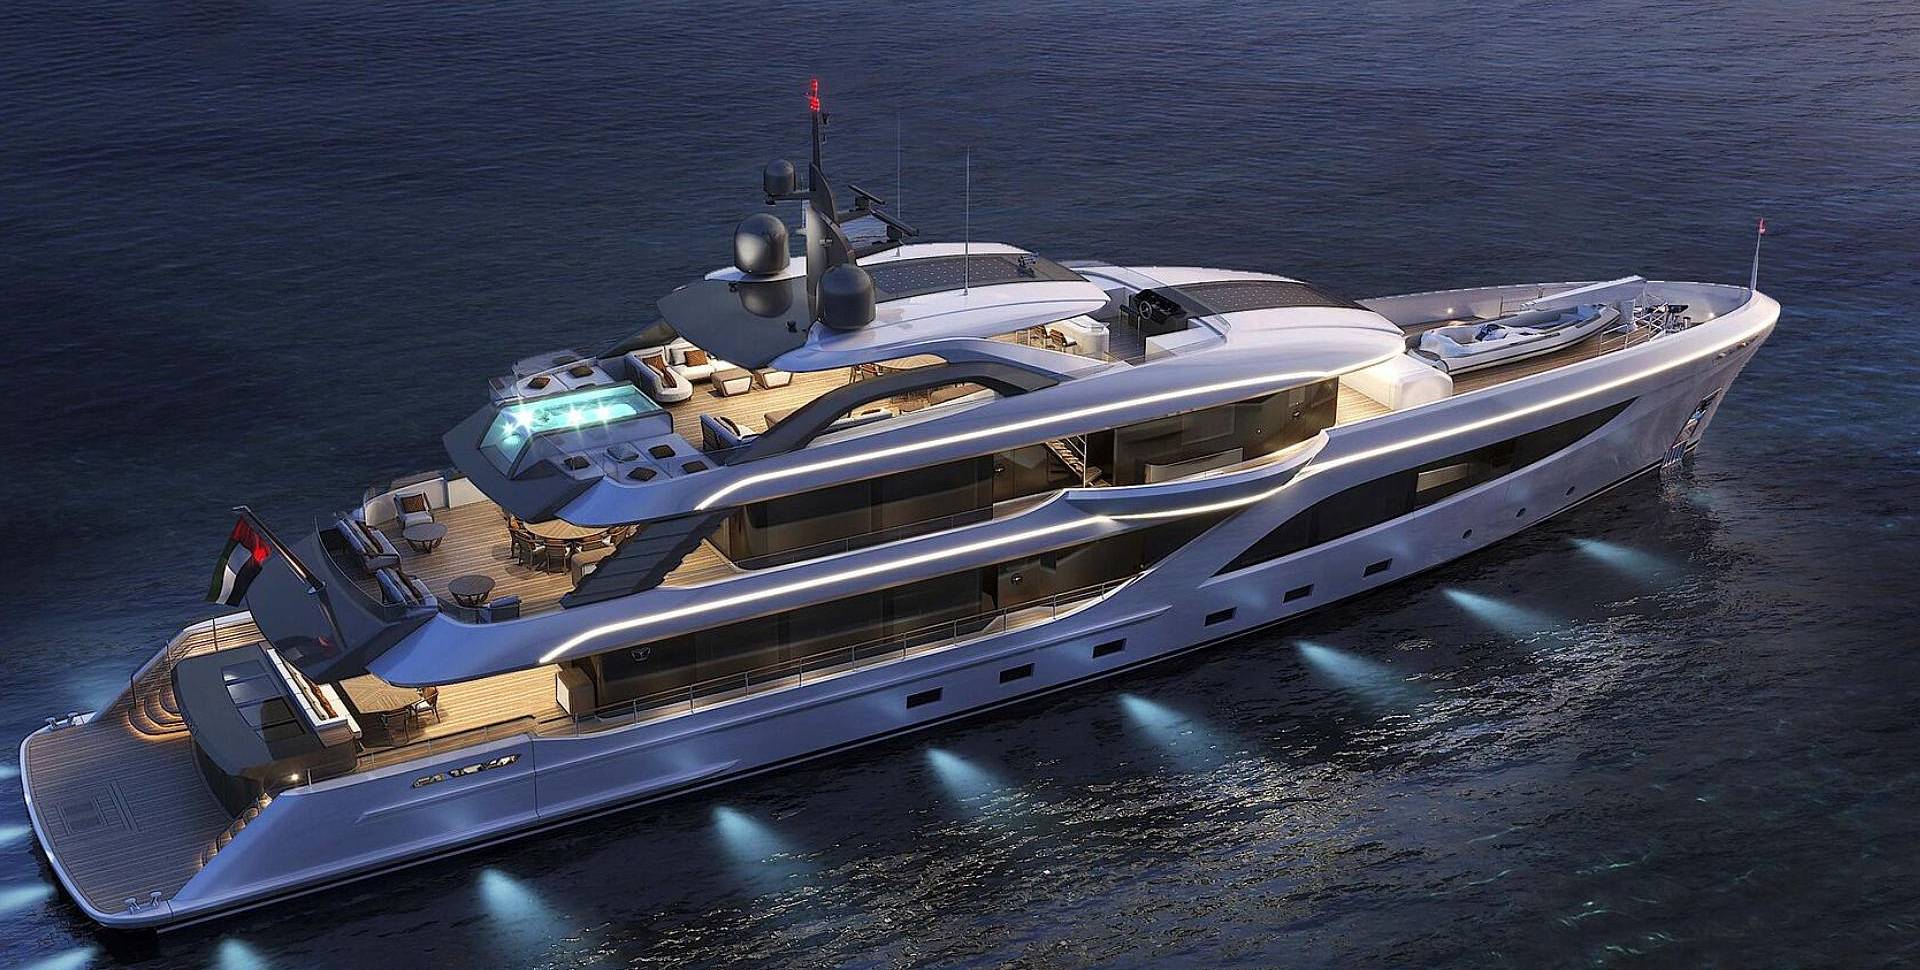 Majesty 160 yacht